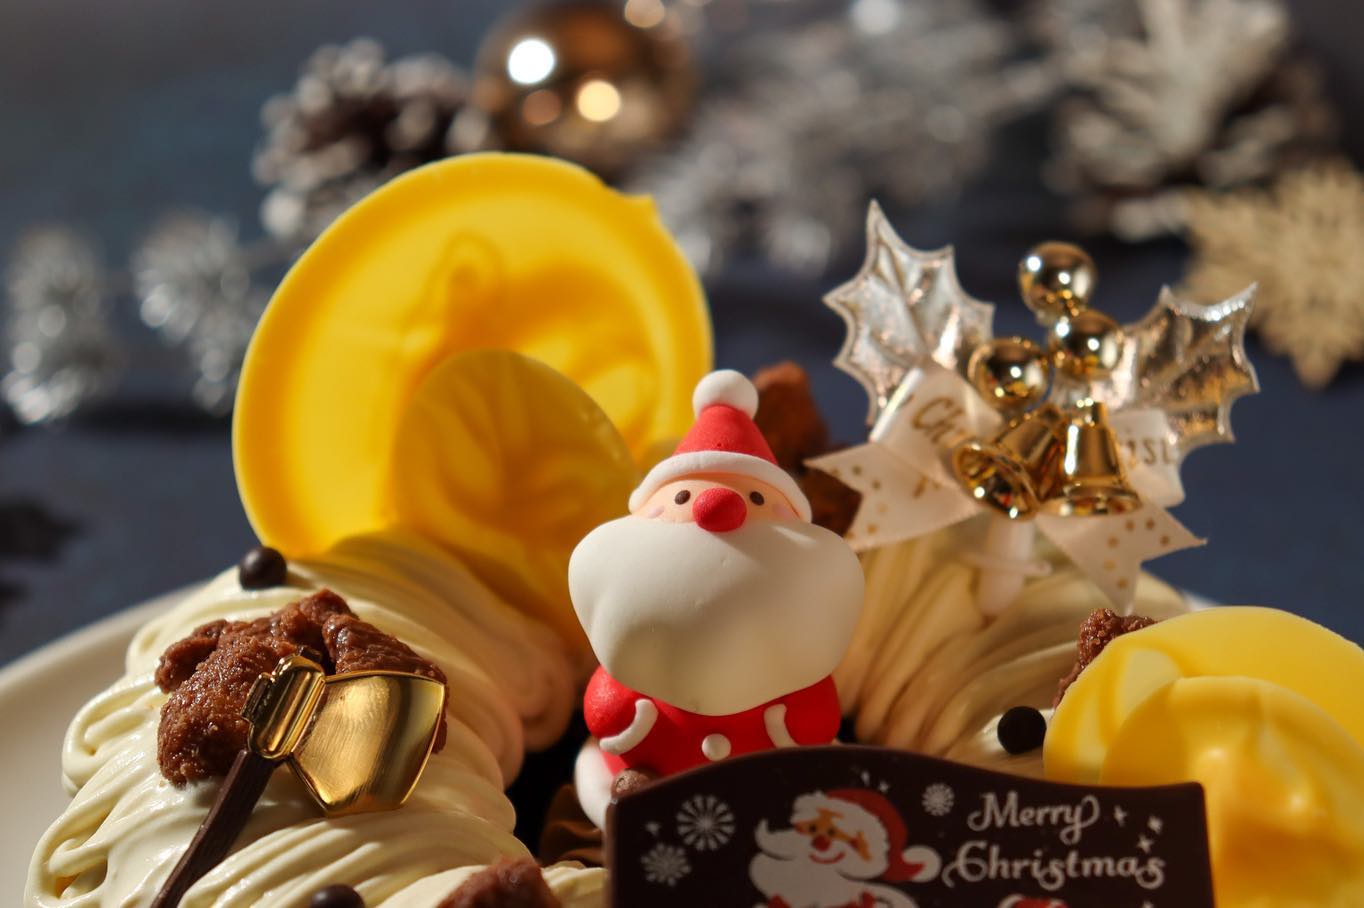 本日も1日宜しくお願い
致します

2022クリスマス新商品です

クーロンヌ・バナーヌ

チョコレートとキャラメル
2色のムースを焼バナナの
タルトと共に…
クリスマスリースをイメージ
したケーキです

5号サイズ　15㎝　　限定100台
　　　税込¥4266

是非当店のクリスマスケーキで
2022クリスマスをお楽しみ
くださいませ

ご予約の際には、レジの
システム上、勝手ながら
クリスマスケーキの代金は、
前払いとさせていただきます。

お電話・FAX・SNSでの
ご予約受付は、行っておりませんので、ご了承くださいませ。

予約数終了次第締め切らせて
いただきます。
お早めにご予約くださいませ。

飾りは、一部変更となる場合も
ございますので、ご了承ください。

ご予約の変更・キャンセルは、
お受け出来ませんので、予め
ご了承ください。

本日も皆様のお越しを
スタッフ一同心より
お待ちしております

ル・クレールのクレープ屋さん
カフェ・ド・バルーンにて、
販売しております焼き立て
クレープも是非